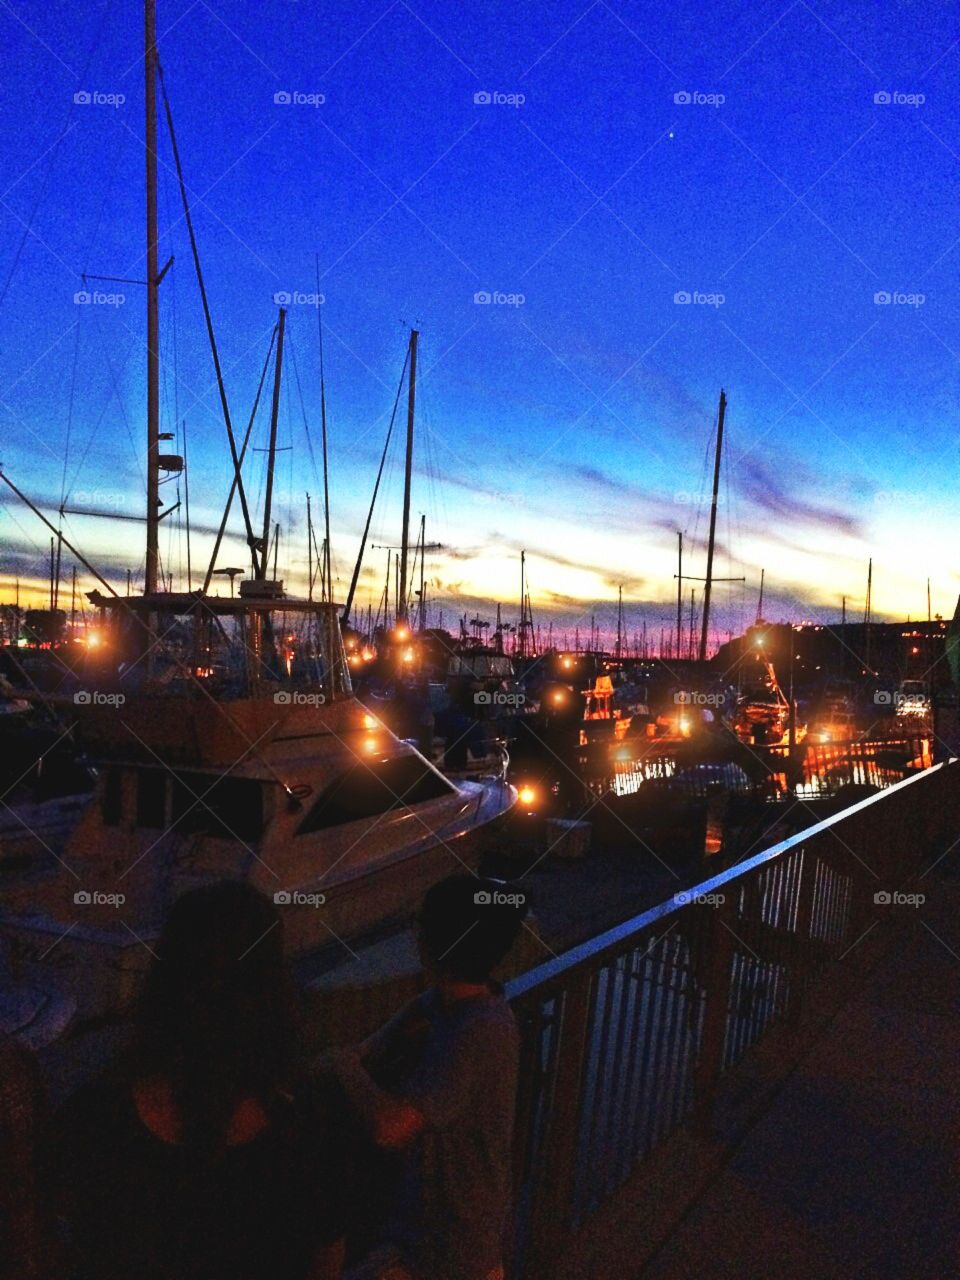 sunset on the marina